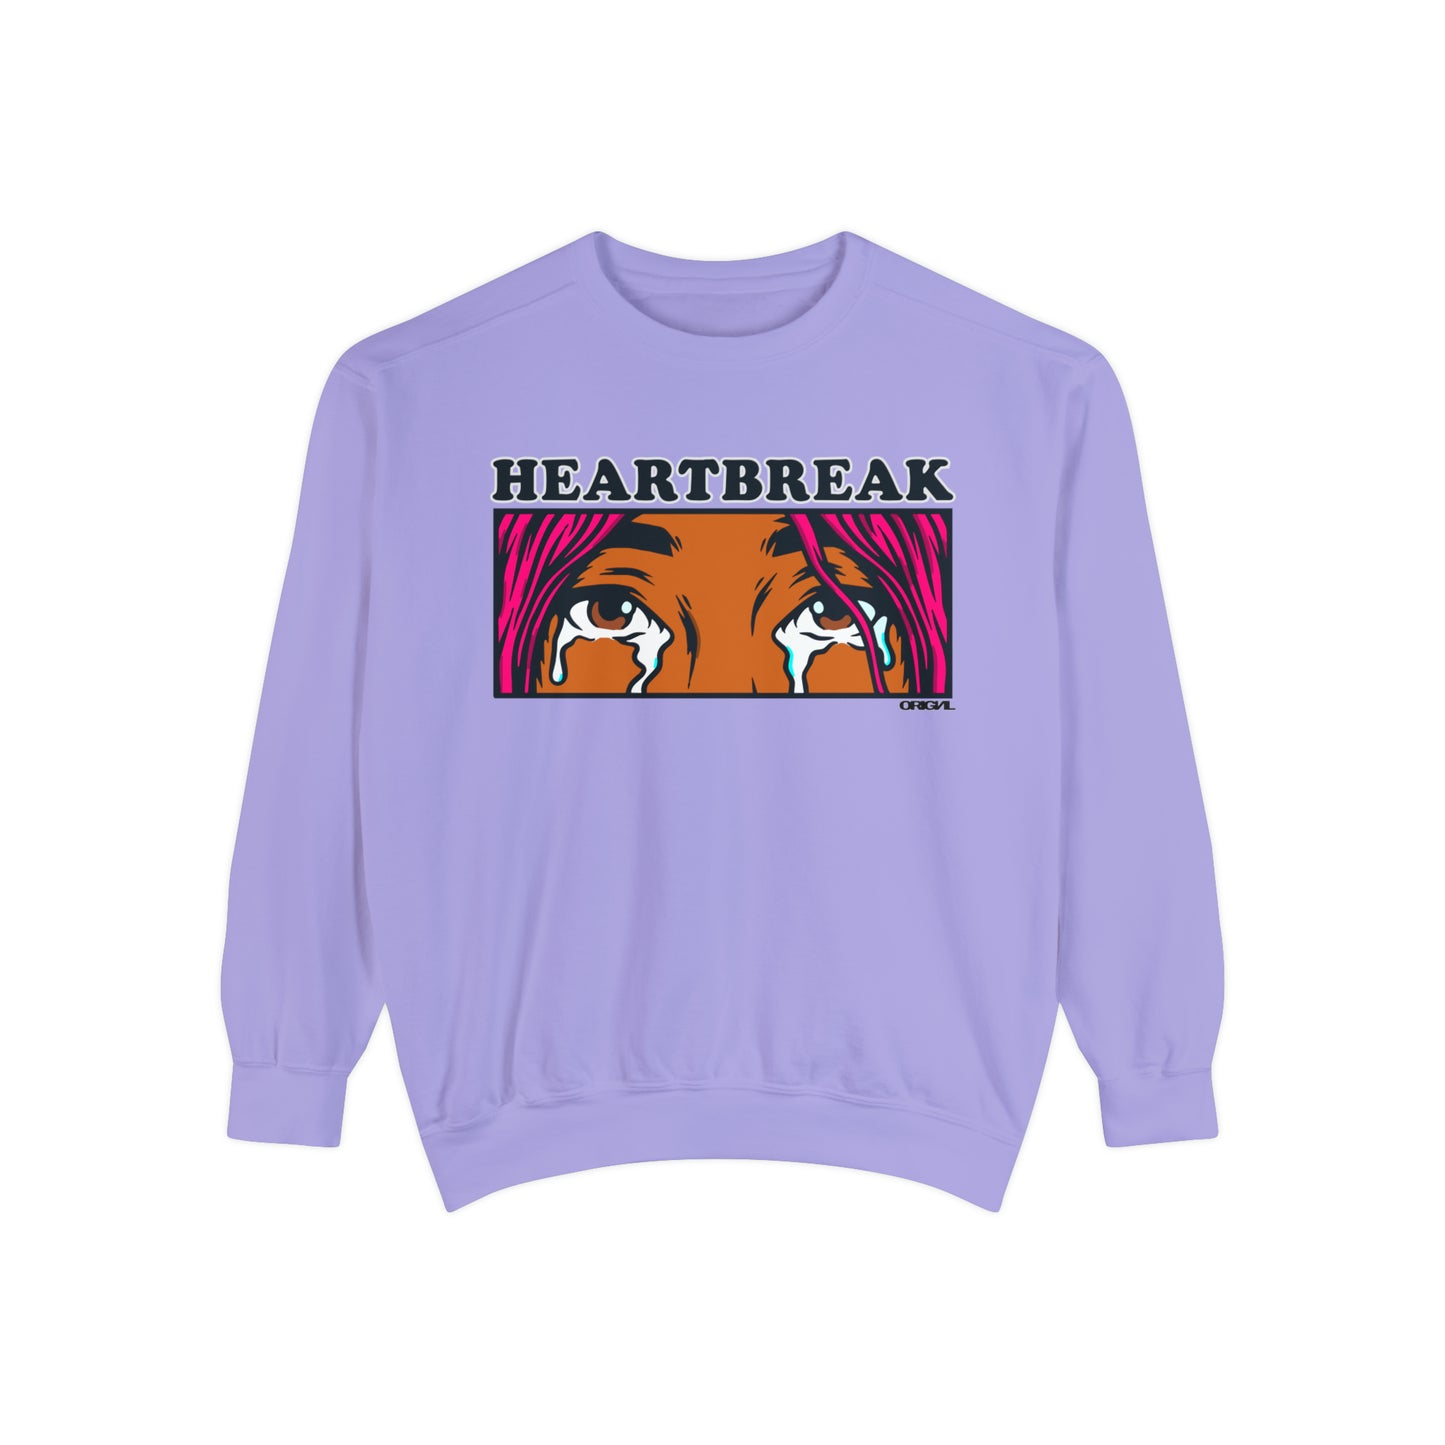 Heart/break